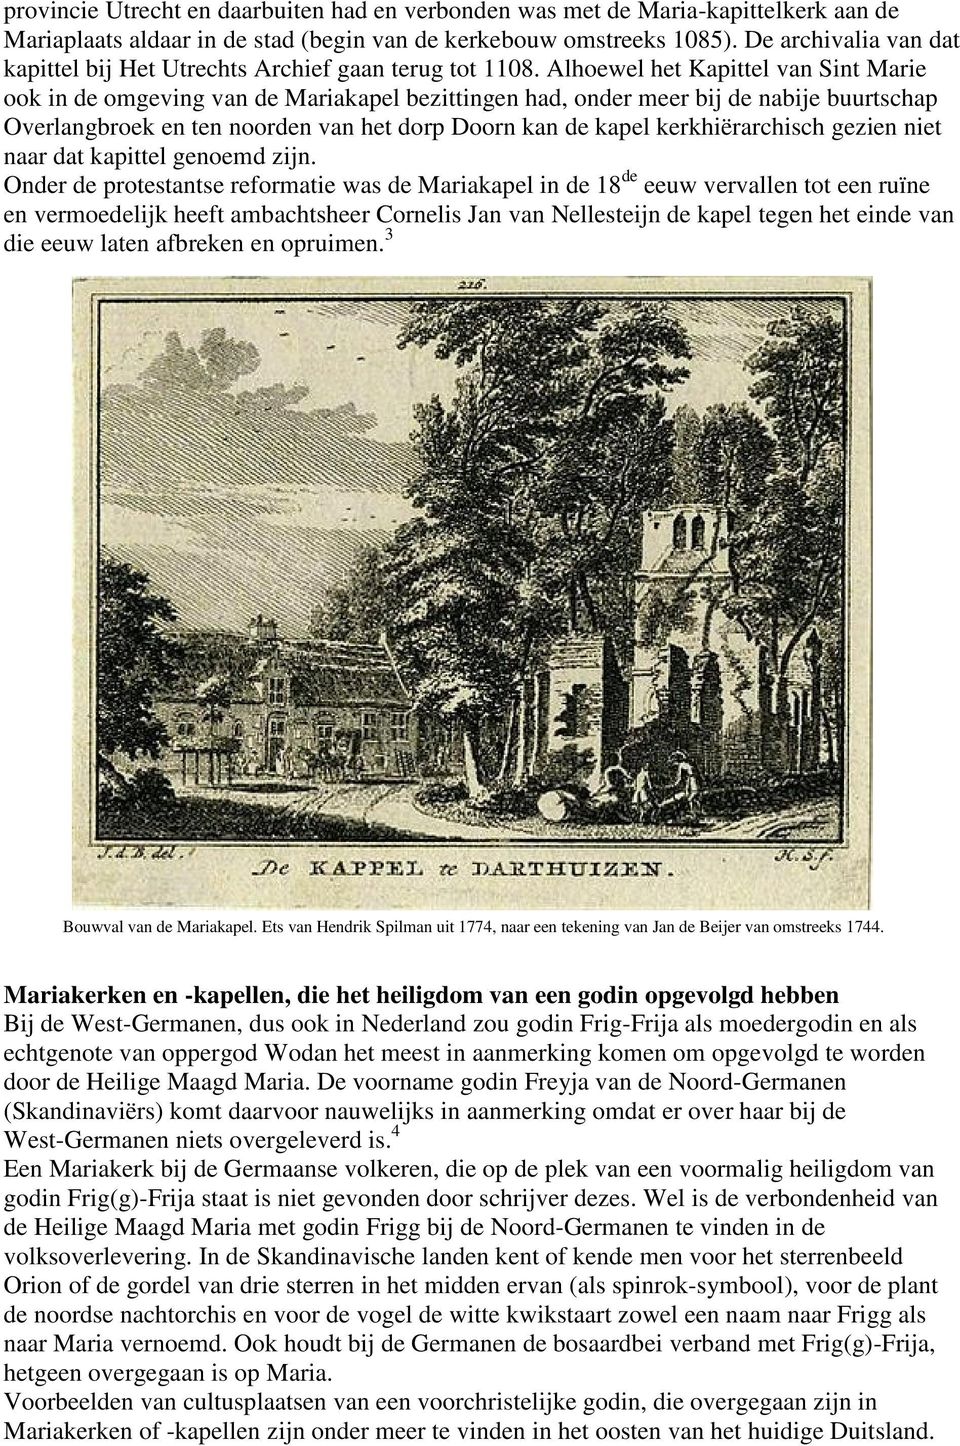 Alhoewel het Kapittel van Sint Marie ook in de omgeving van de Mariakapel bezittingen had, onder meer bij de nabije buurtschap Overlangbroek en ten noorden van het dorp Doorn kan de kapel